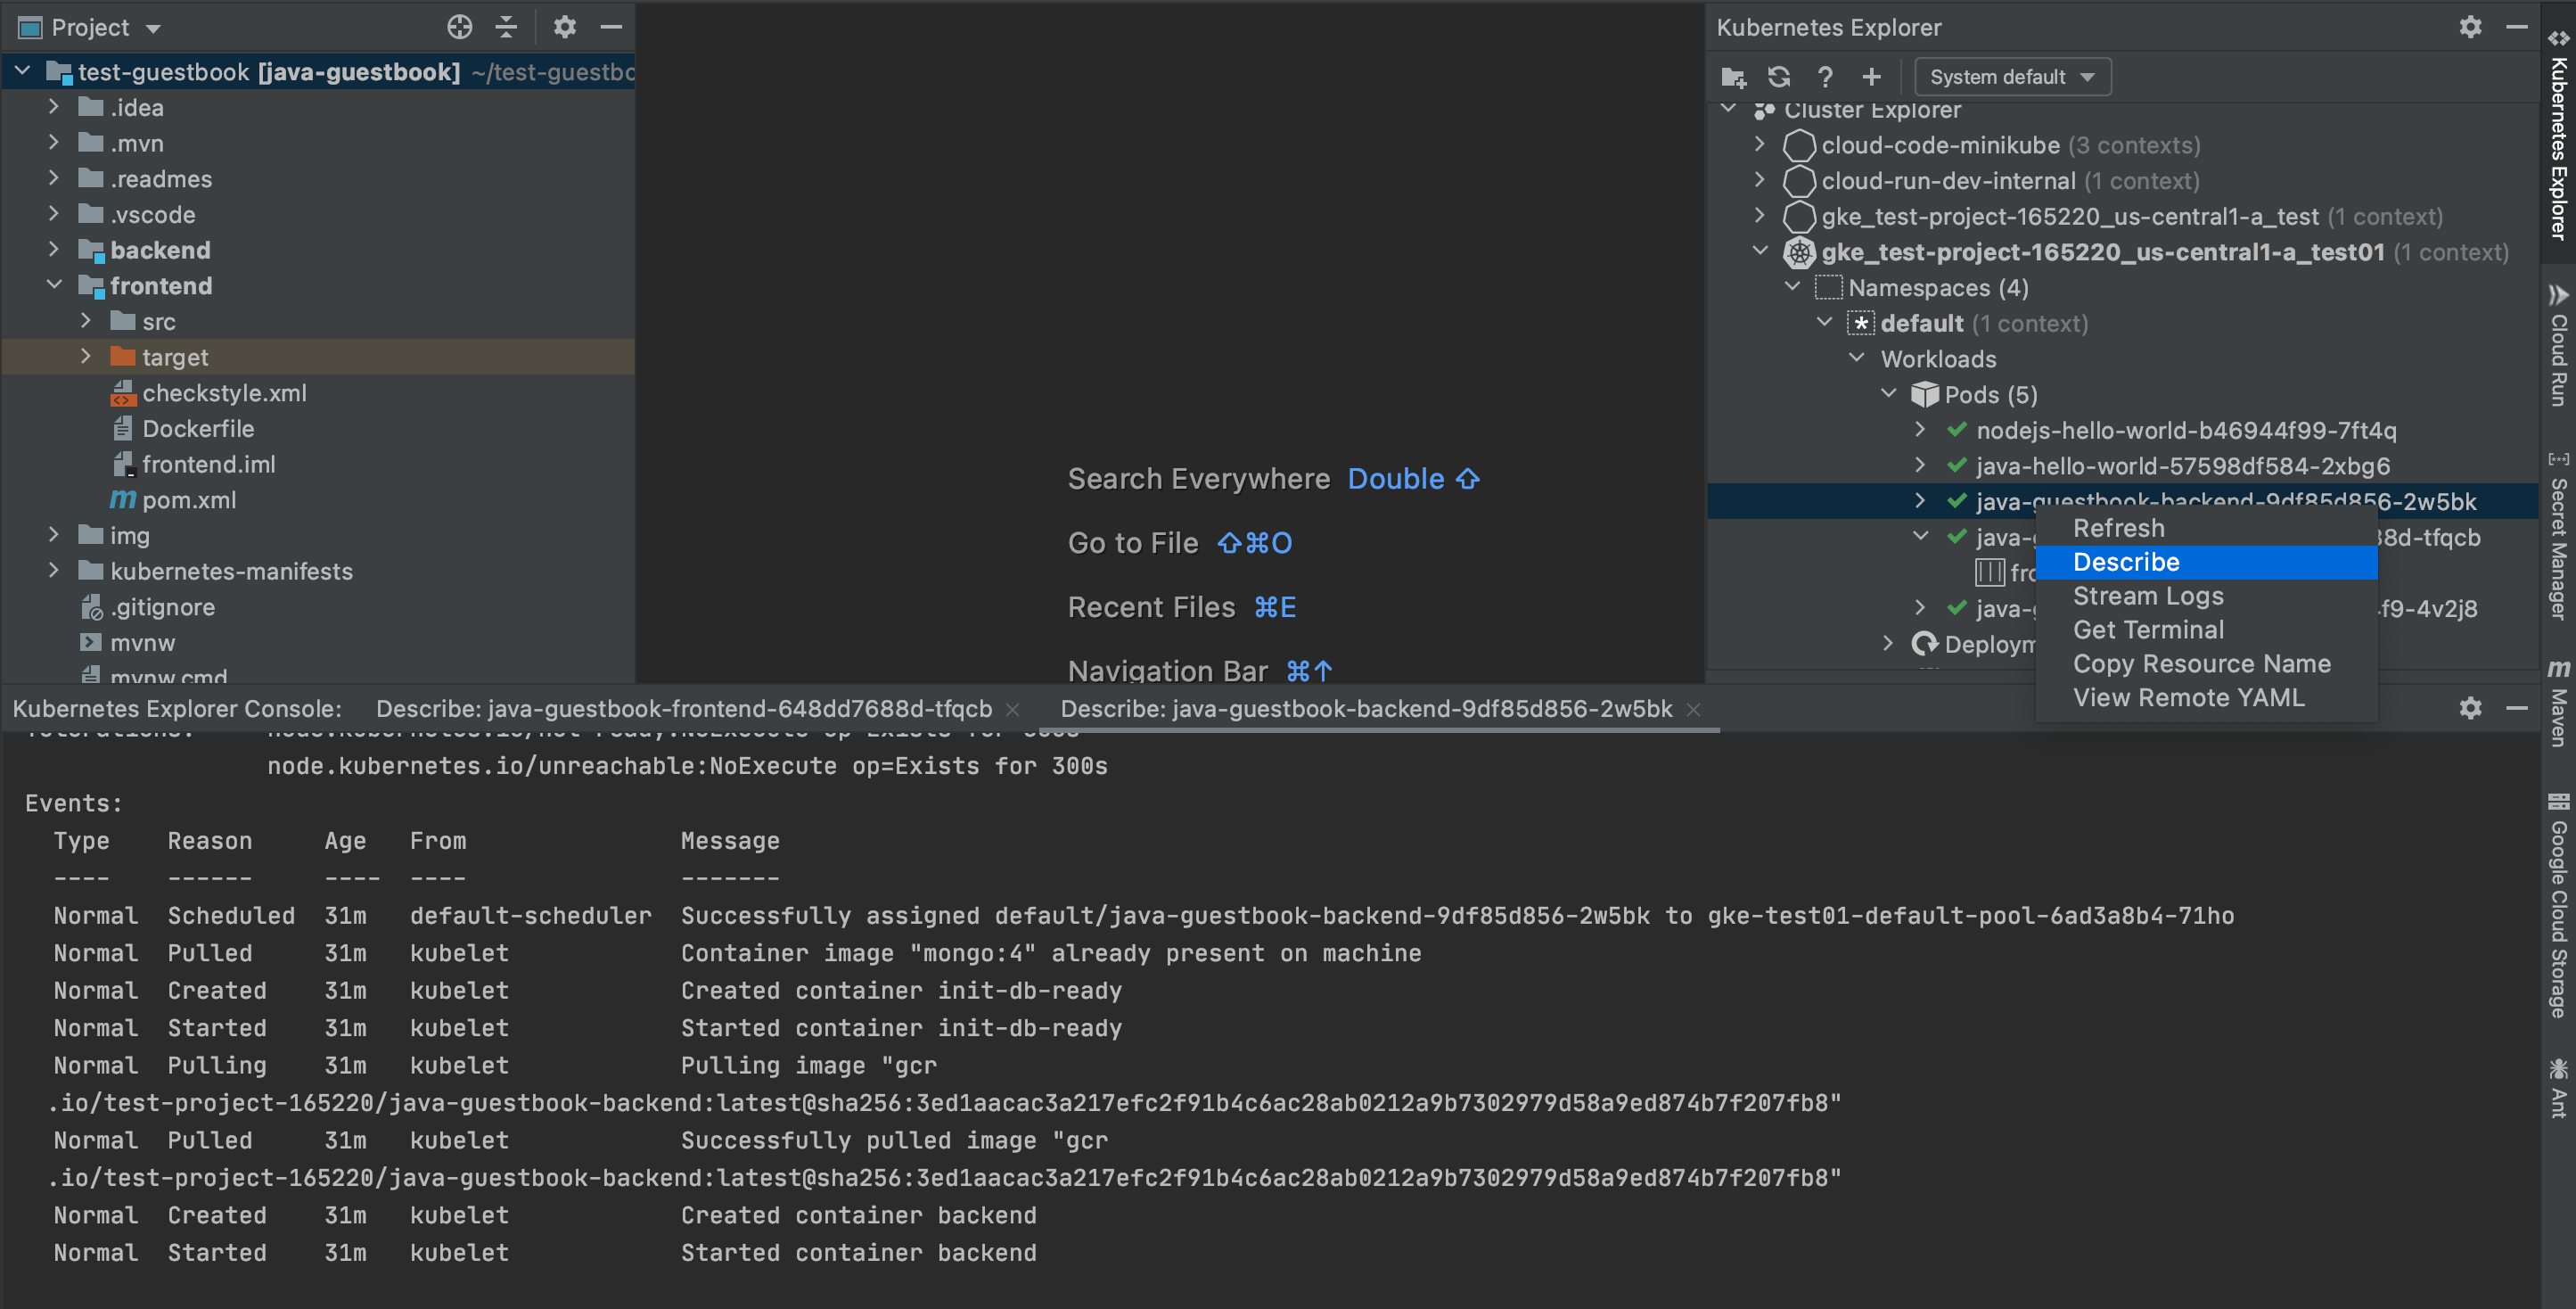 在 Kubernetes Explorer 面板中右键点击相应资源并选择“描述”时显示的描述选项